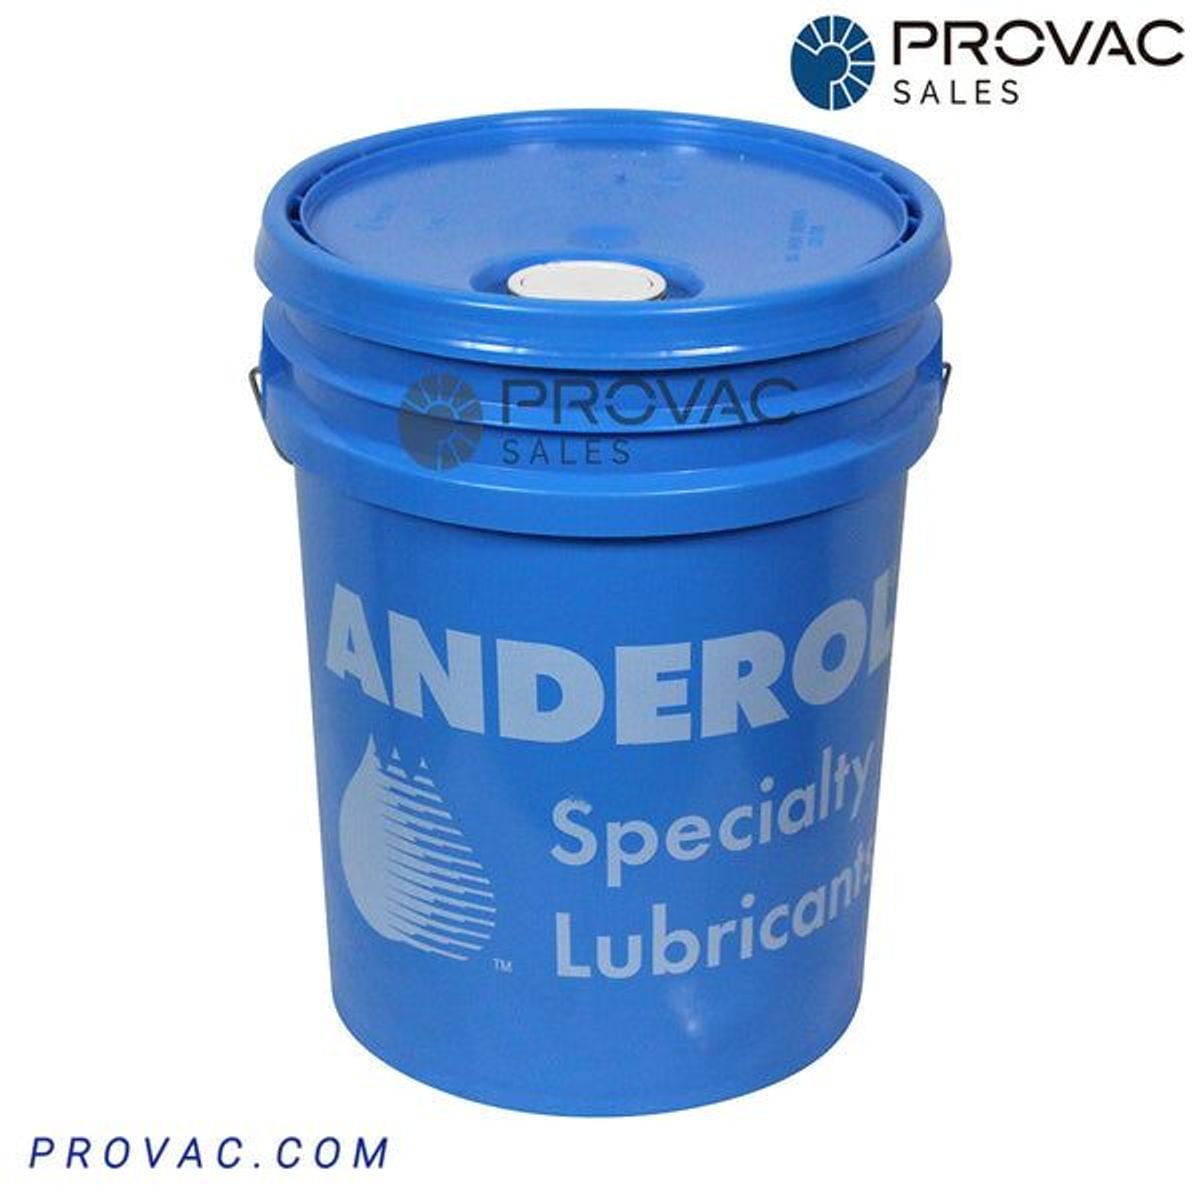 Anderol 555 Oil, 5 gallon Image 1